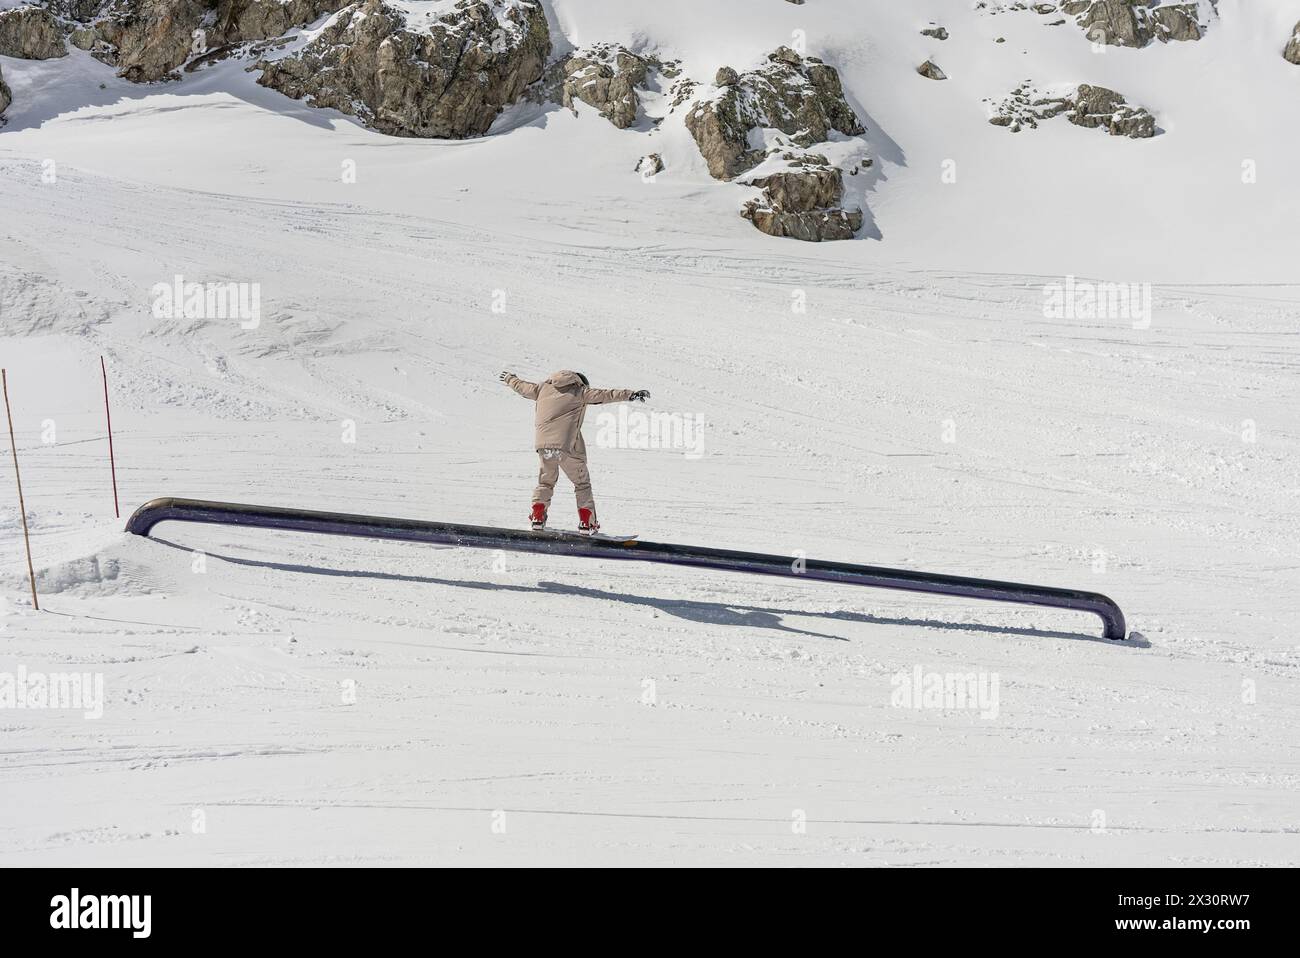 Trucchi per lo Snow Park in montagna. Trucchi per la pipa dello Snow Park. Snowboarder nel parco su un pipex. Jibbing invernale nello snwopark delle Alpi. Snow Park sulle alpi. Foto Stock